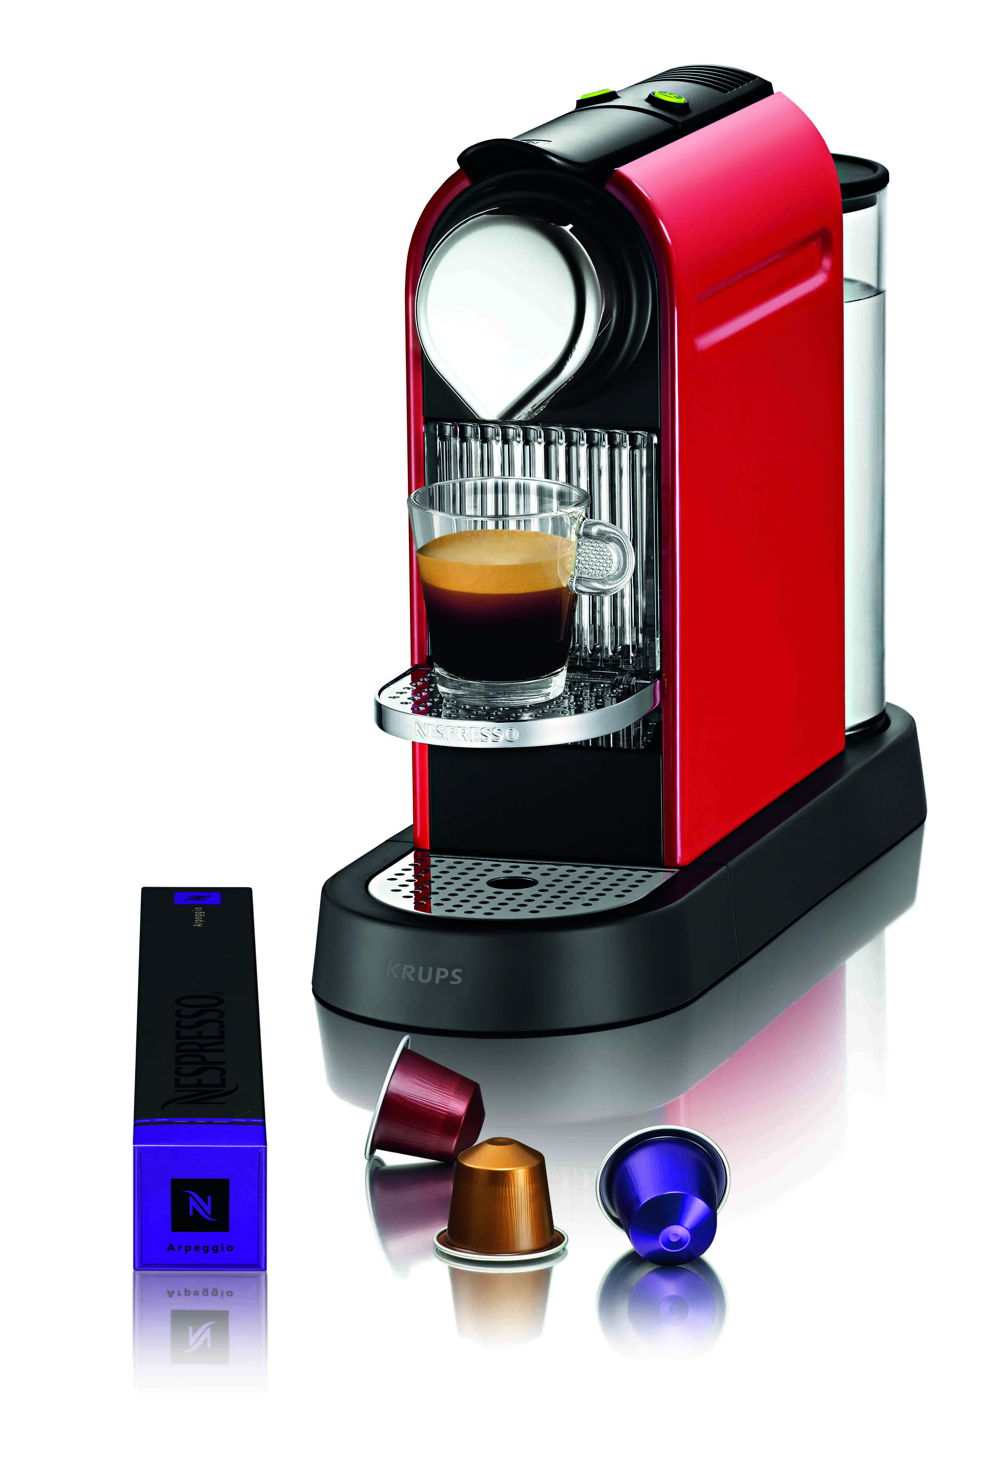 Aanbevolen verkoopprijzen

Nespresso Citiz Fire-engine Red - 178,95 euro